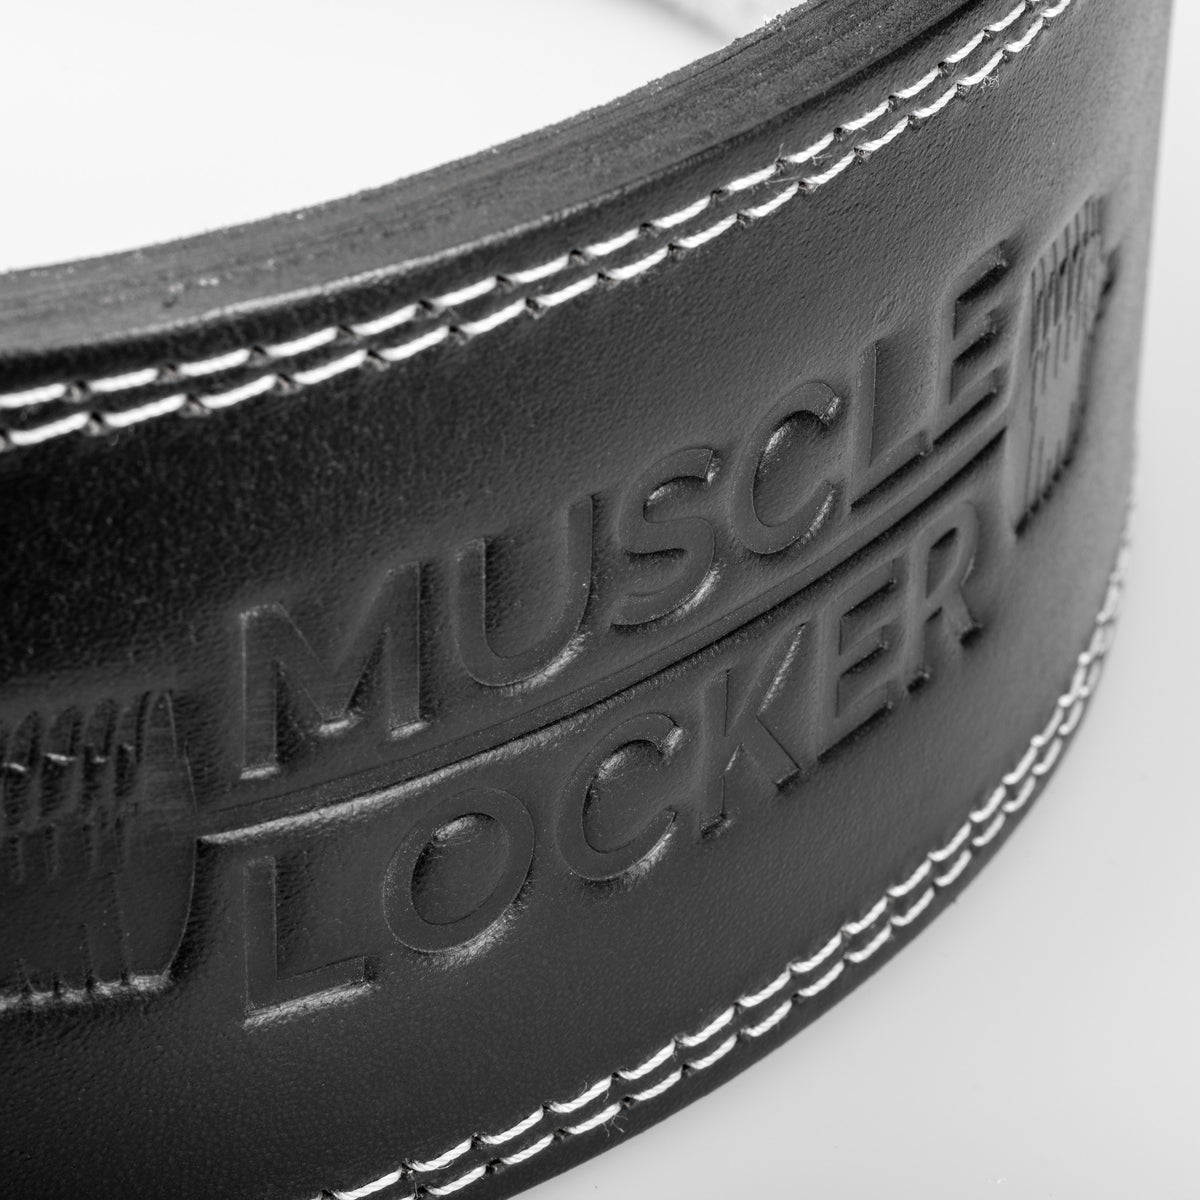 The Muscle Locker 13mm Lever Belt